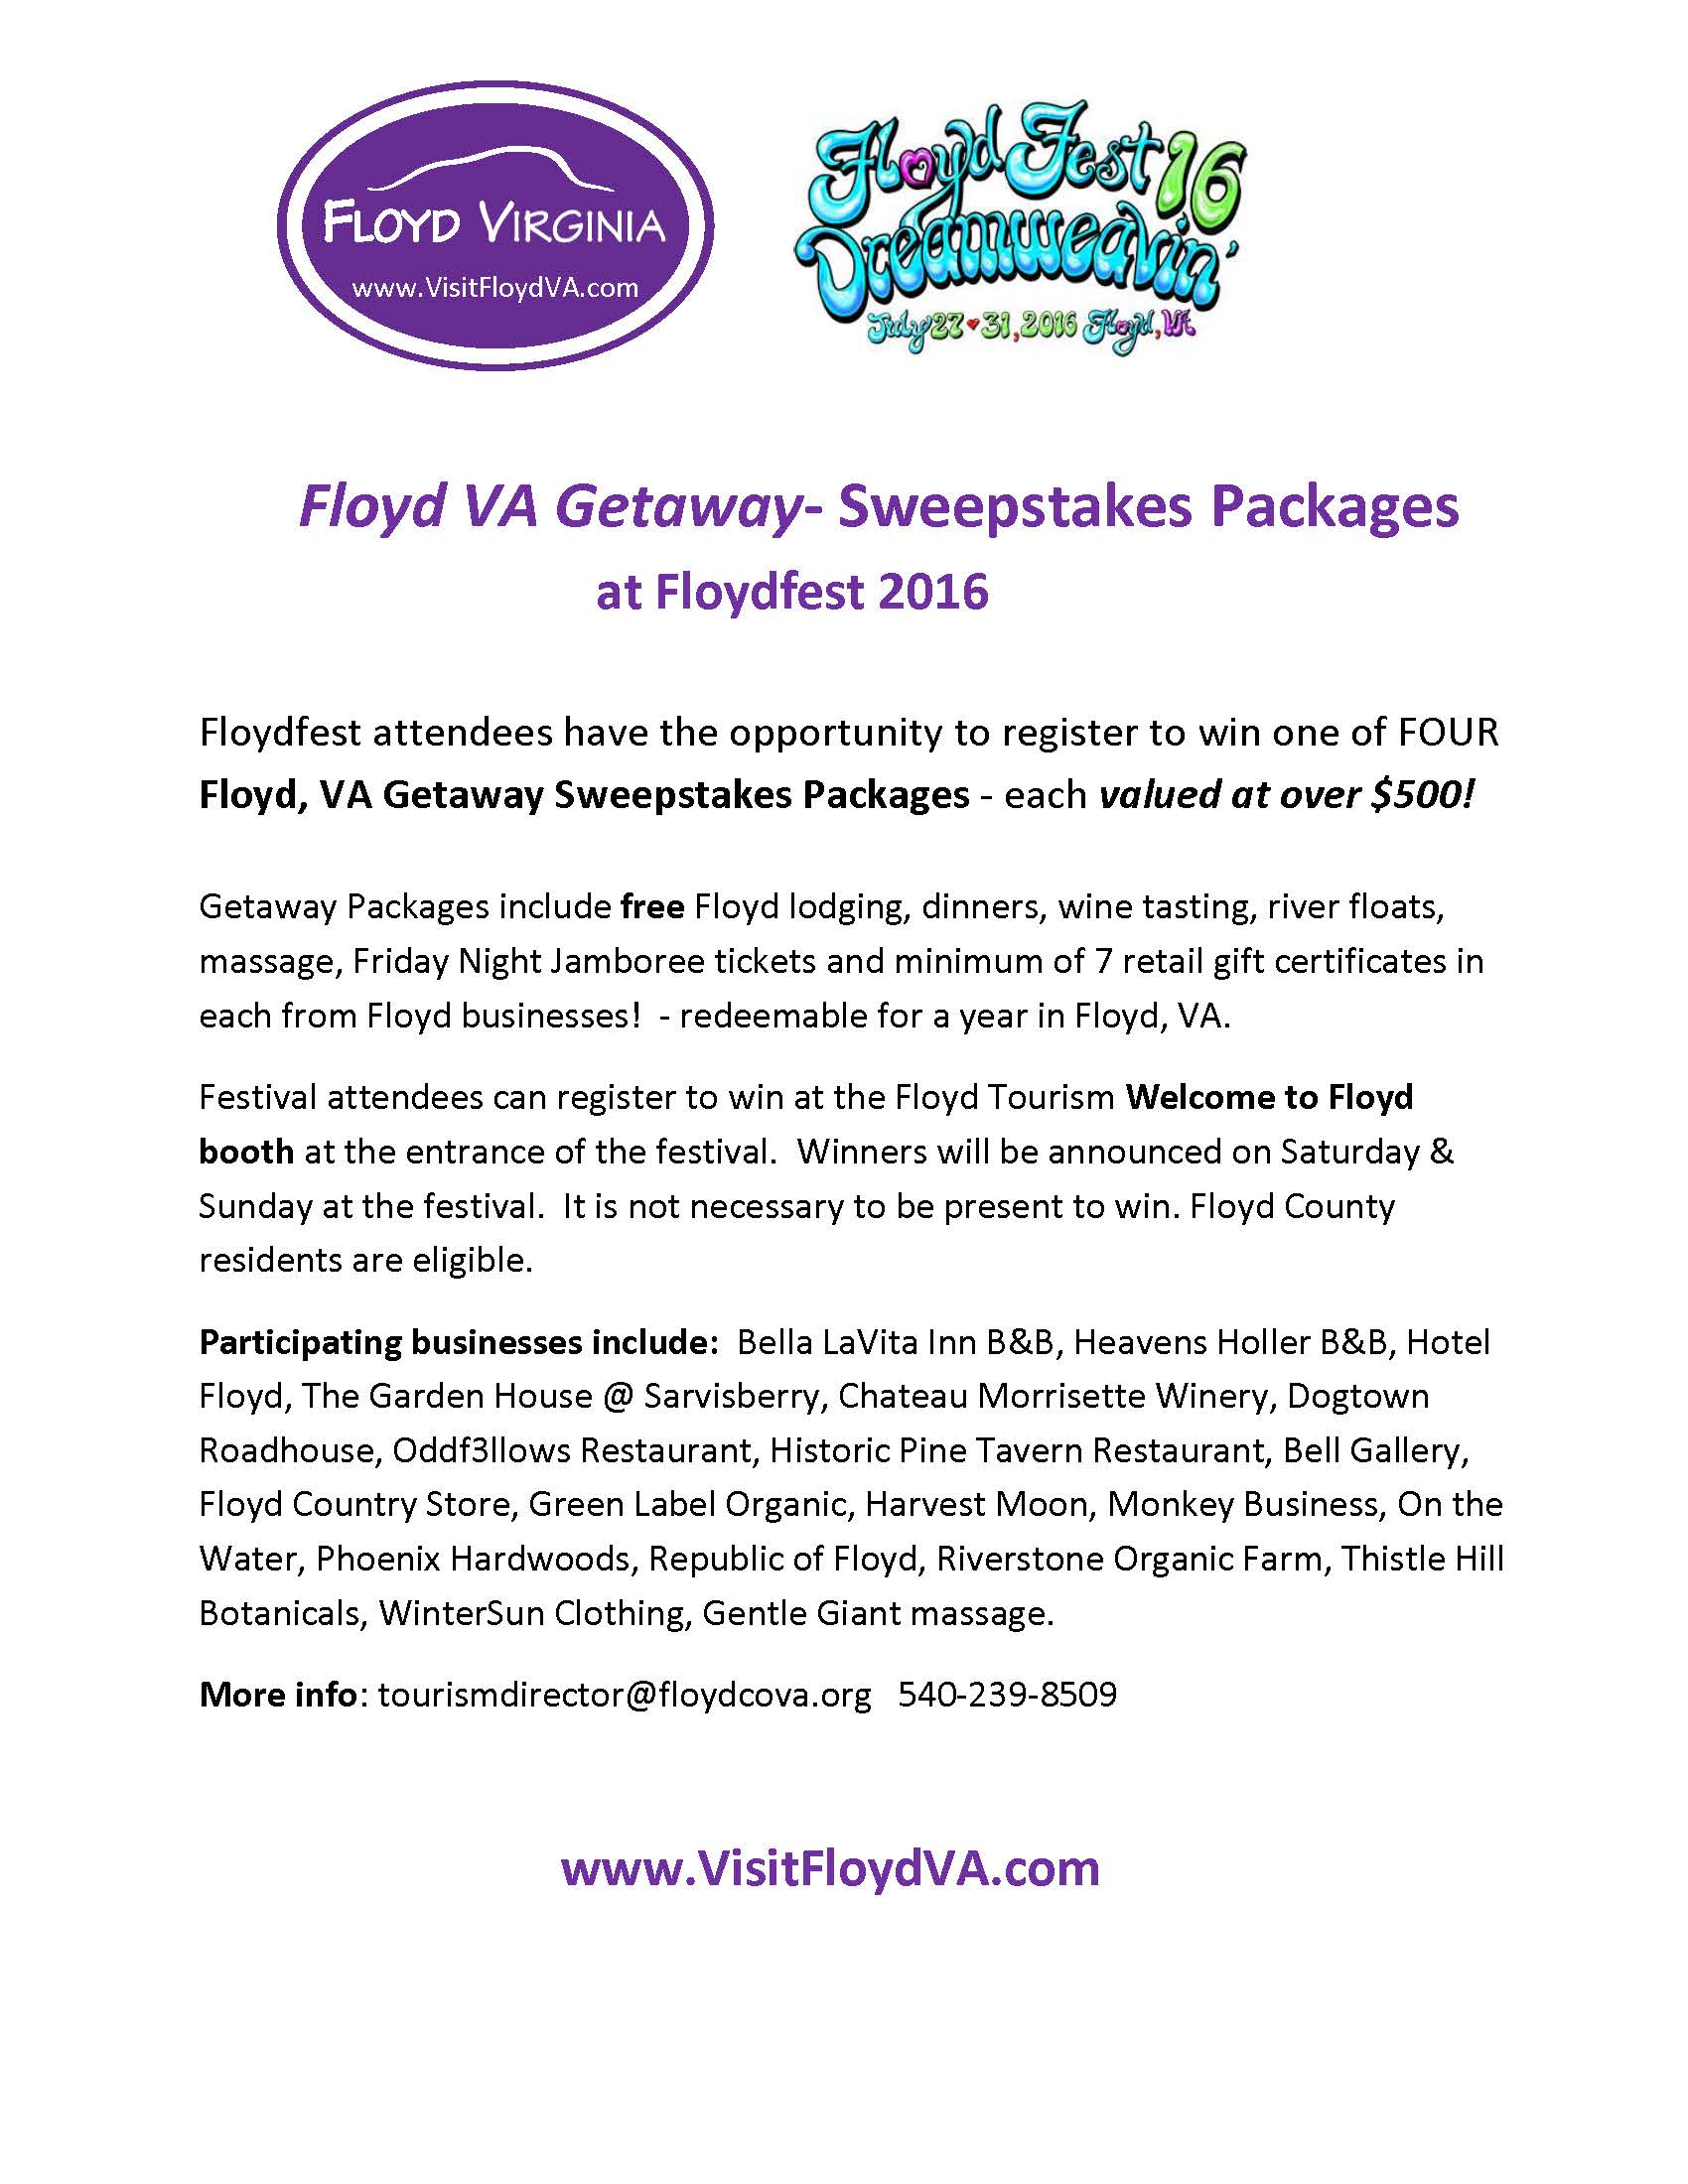 Getaway Packages PR Floydfest 2016